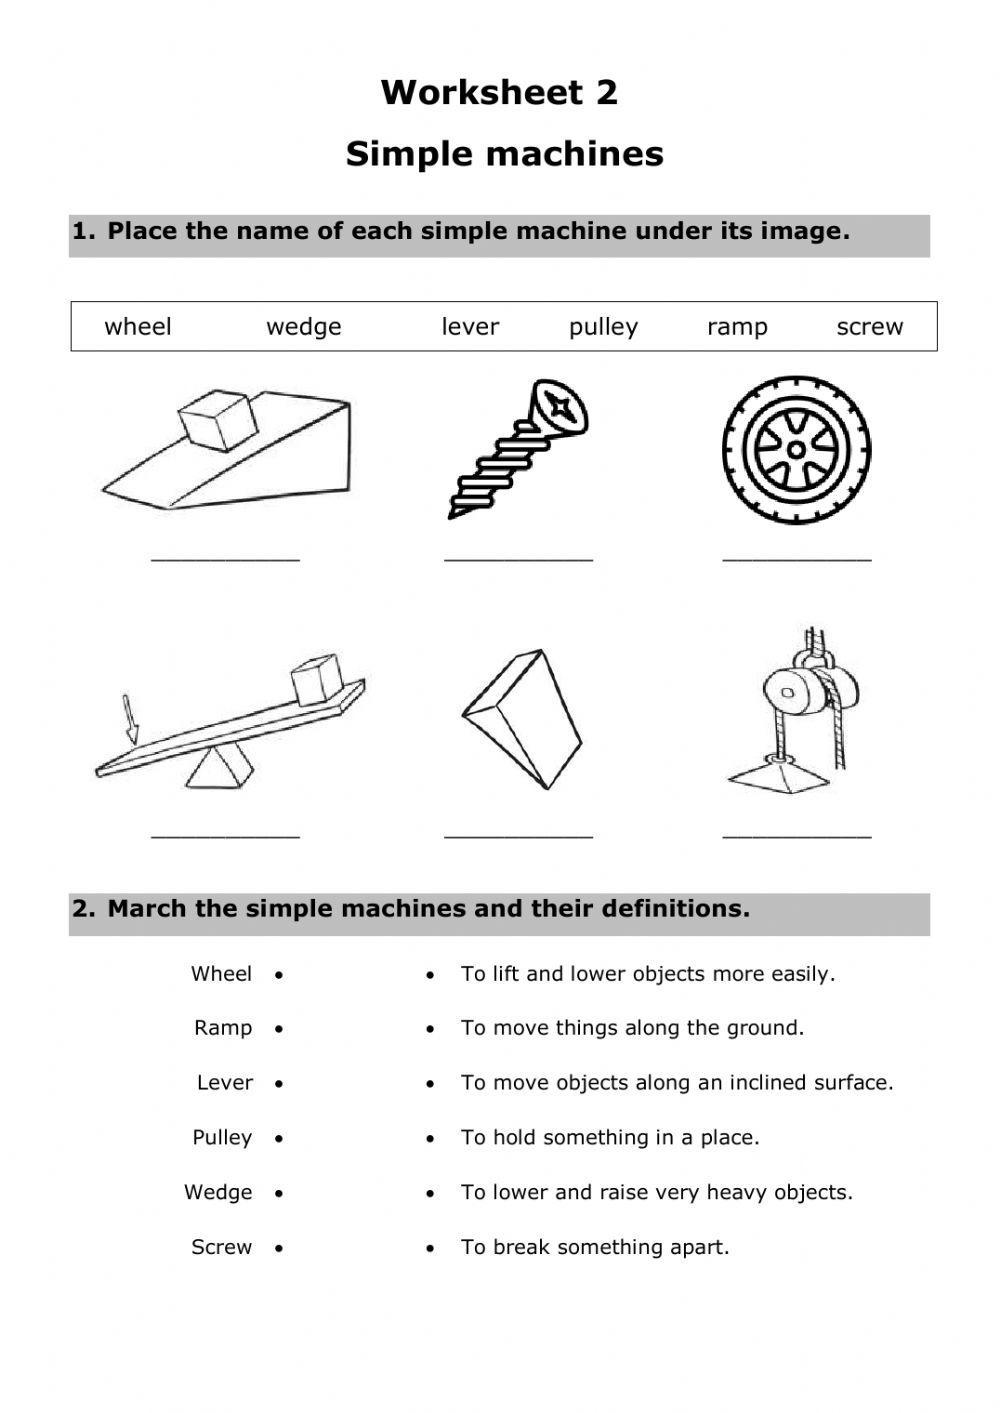 Worksheet 2: Simple Machines